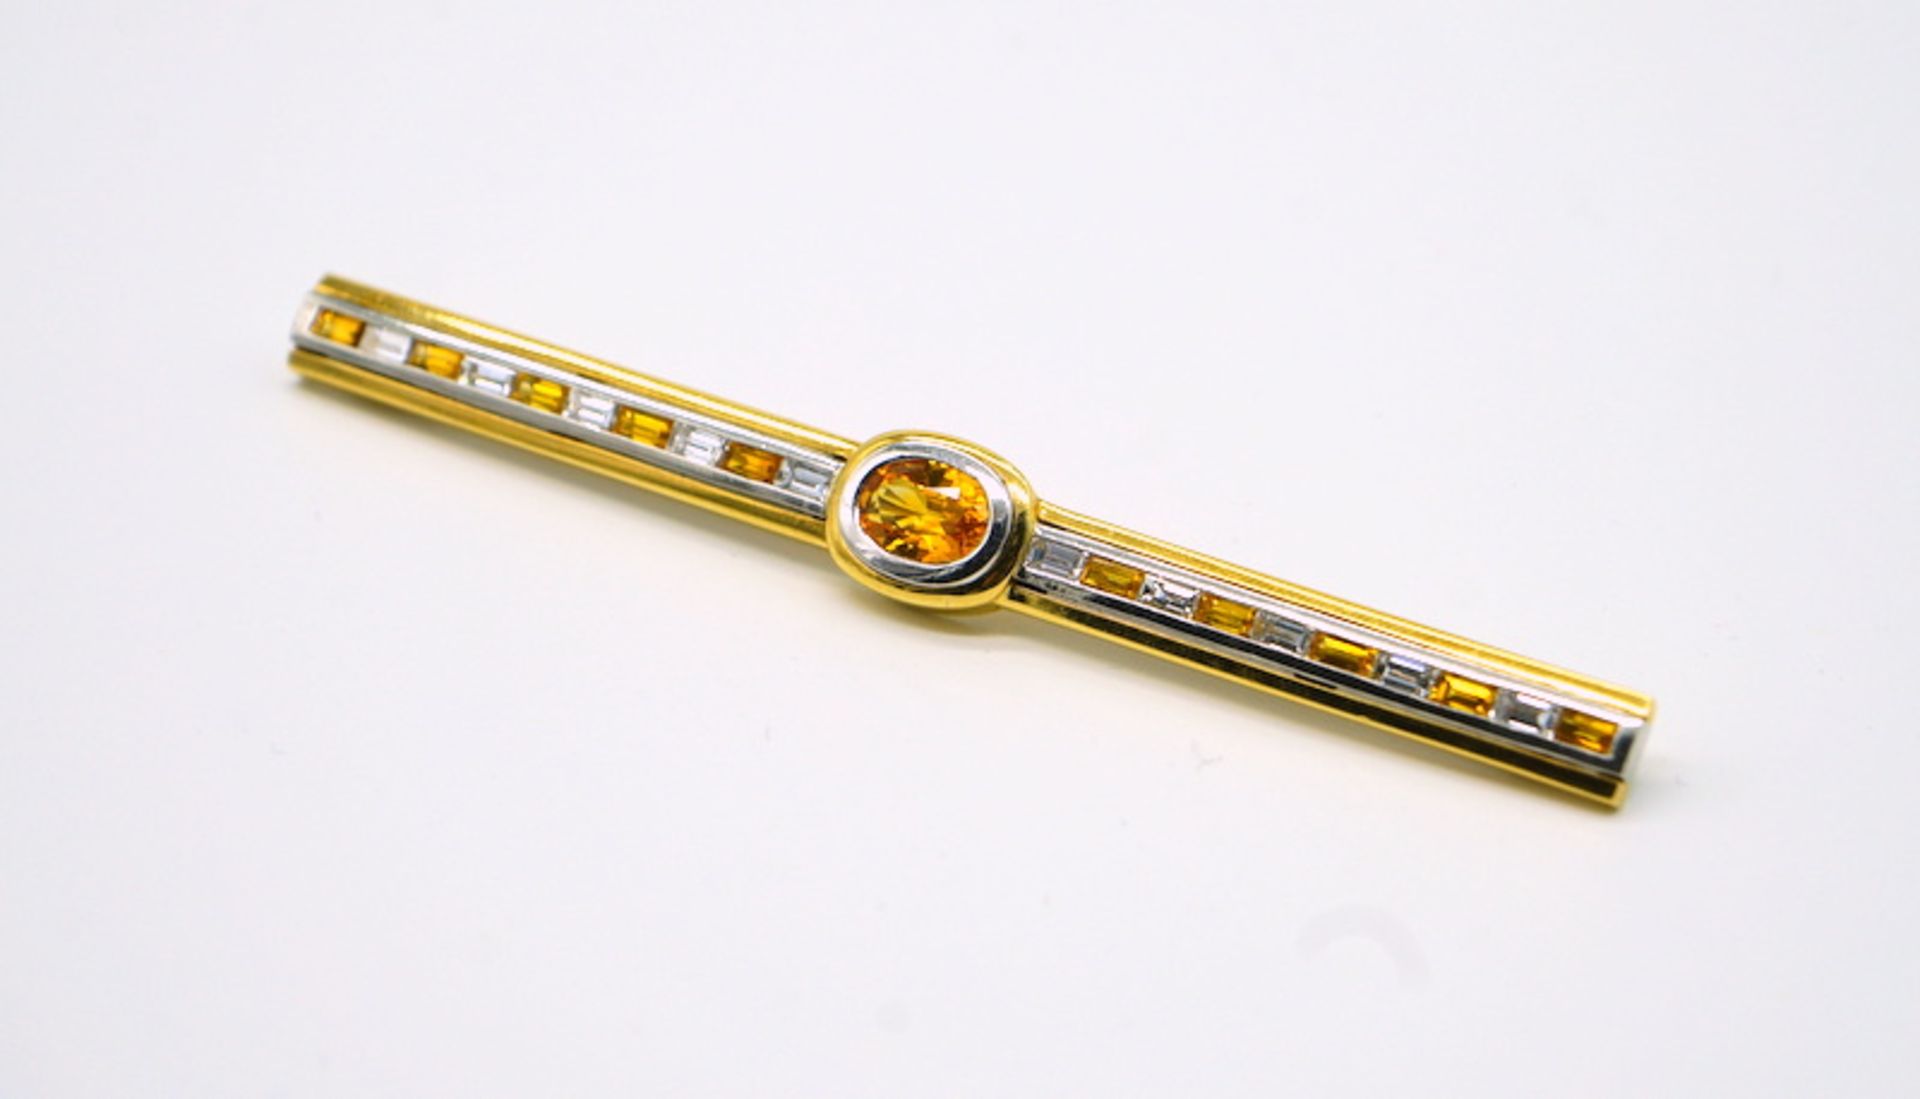 Parure mit Diamanten und gelben Saphiren, 750 GG, Juweliersanfertigung - Image 9 of 10